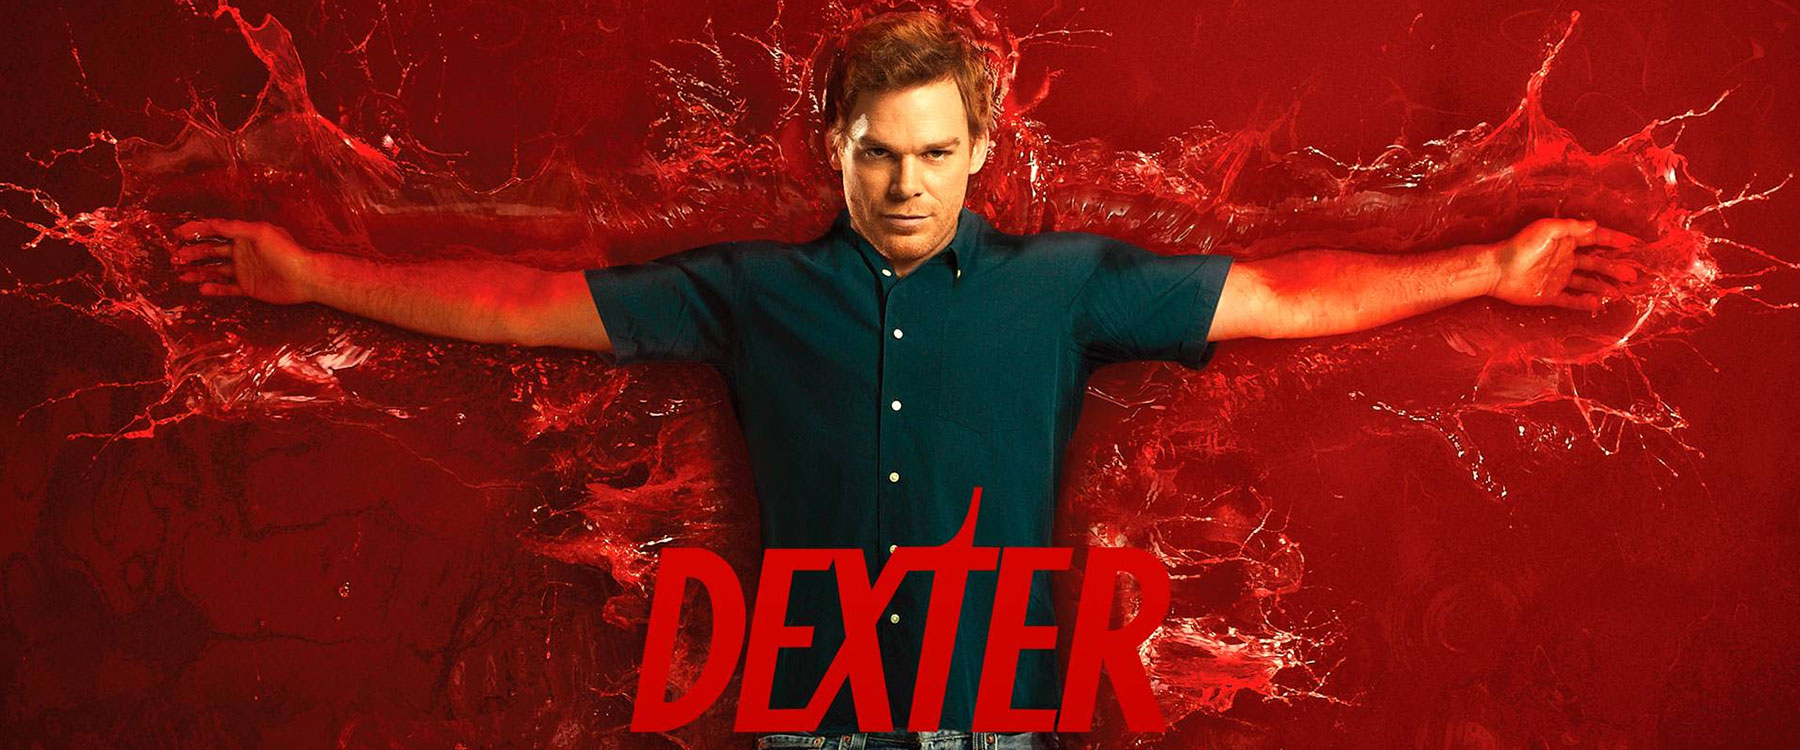 Dexter (Dexter)